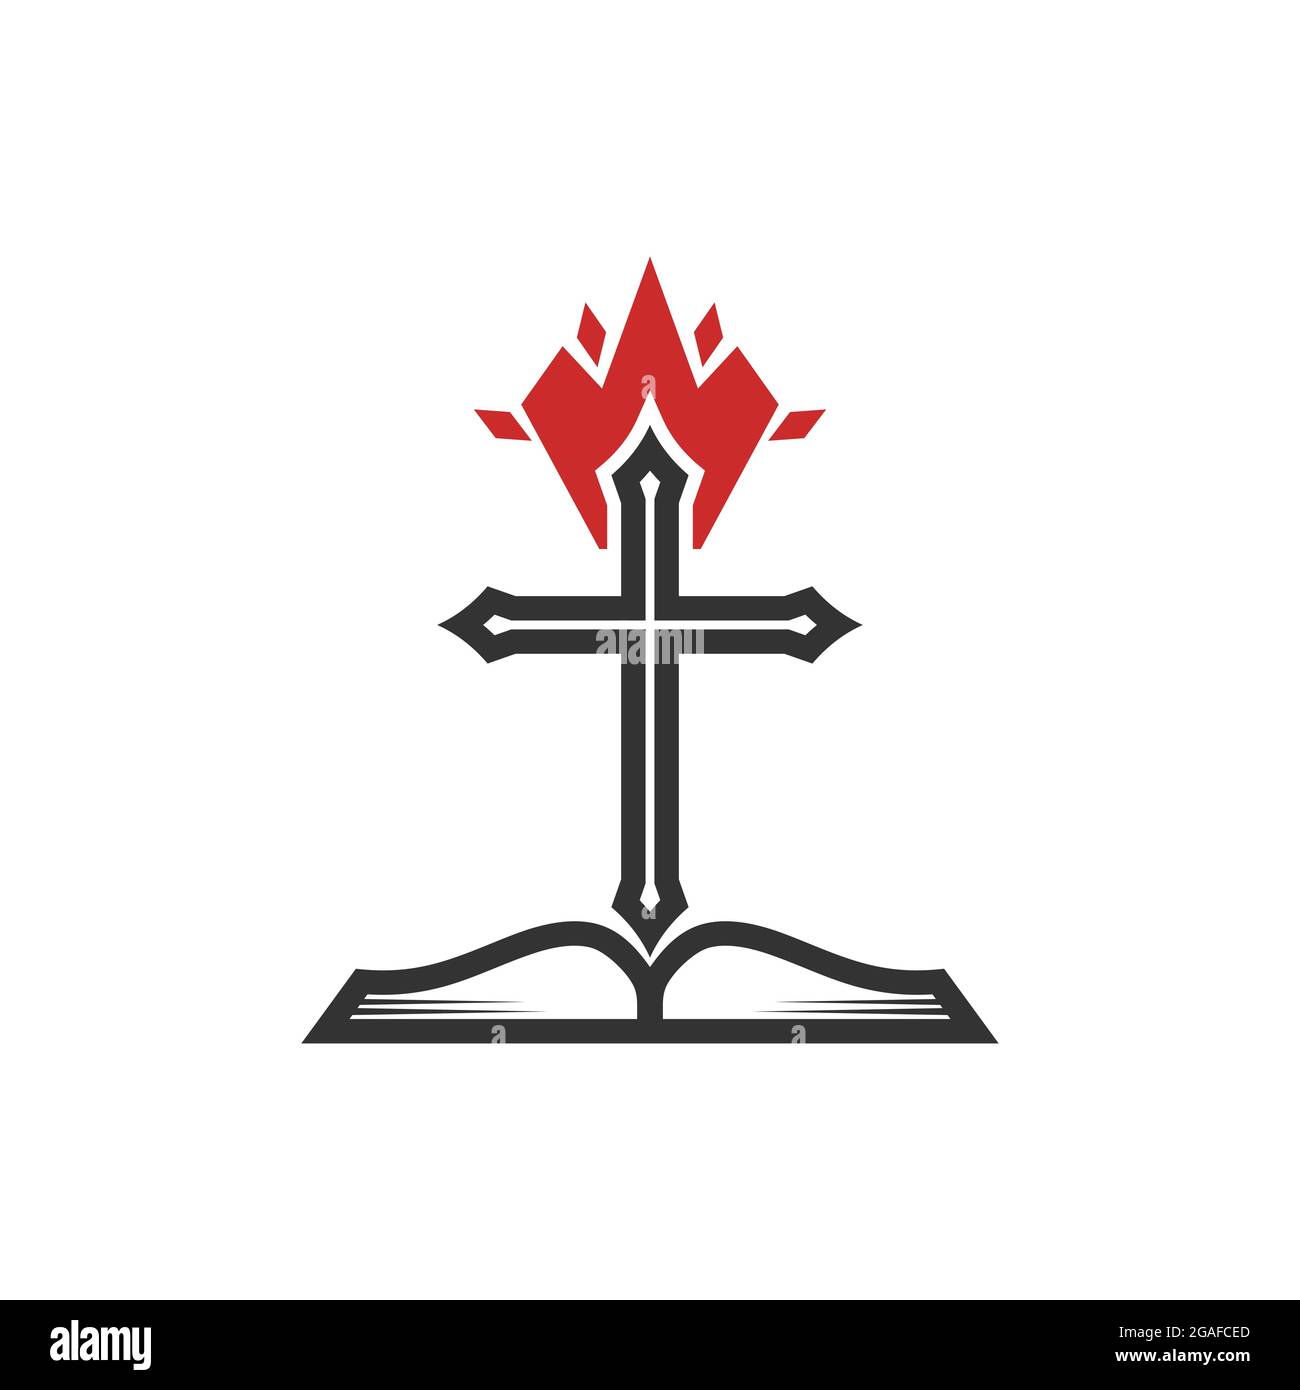 Christliche Illustration. Kirchenlogo. Das Kreuz des Herrn Jesus Christus, eine offene Bibel und eine Feuerflamme sind ein Symbol des Heiligen Geistes. Stock Vektor